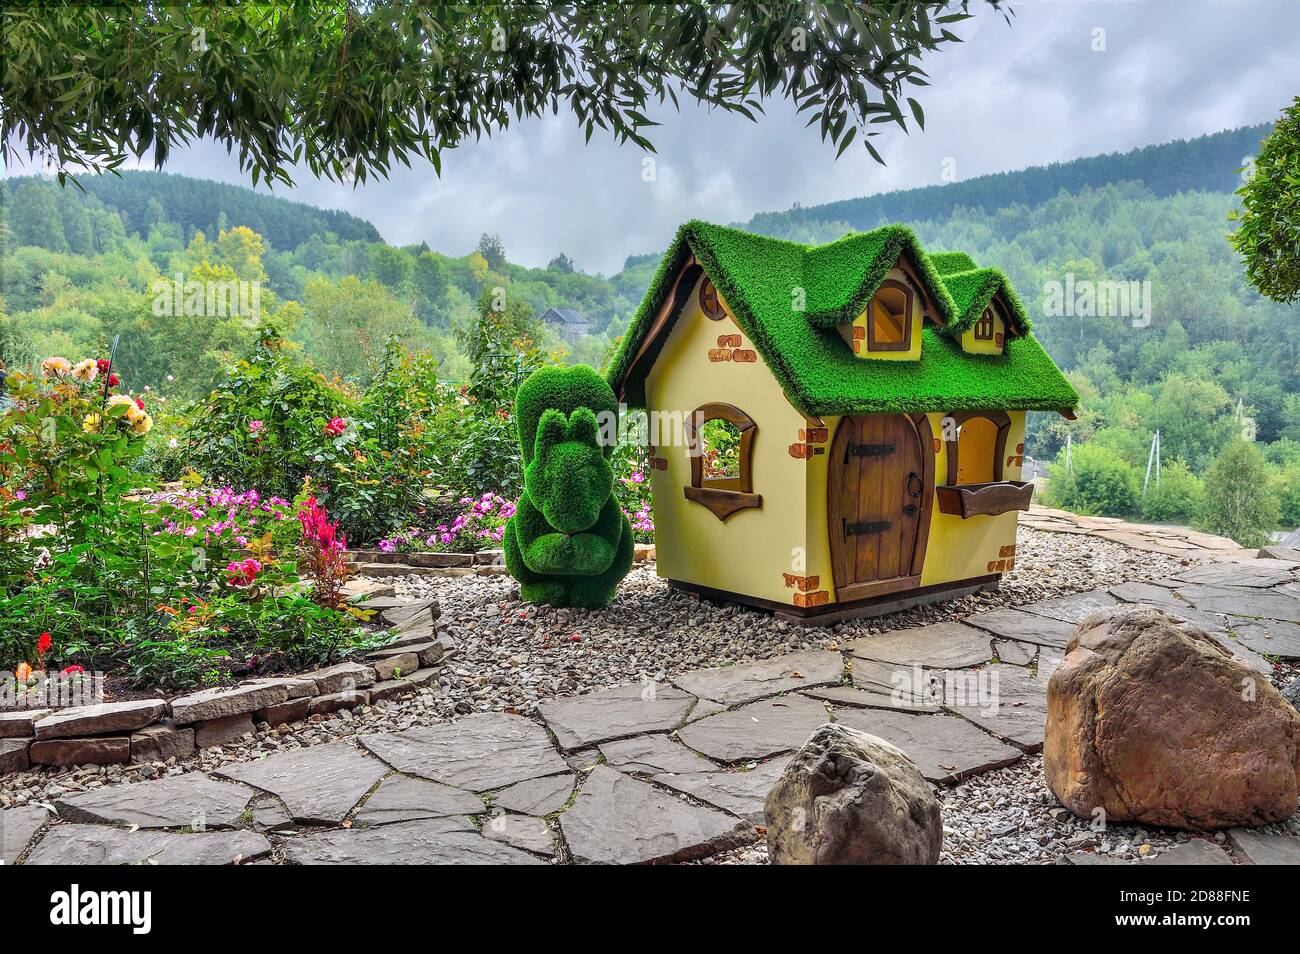 Novokuznetsk, Russie - 15 août 2020 : sculpture verte d'écureuil près de la petite maison, créée à partir d'herbe artificielle - jardins topiaires. Jardin de roses - Banque D'Images